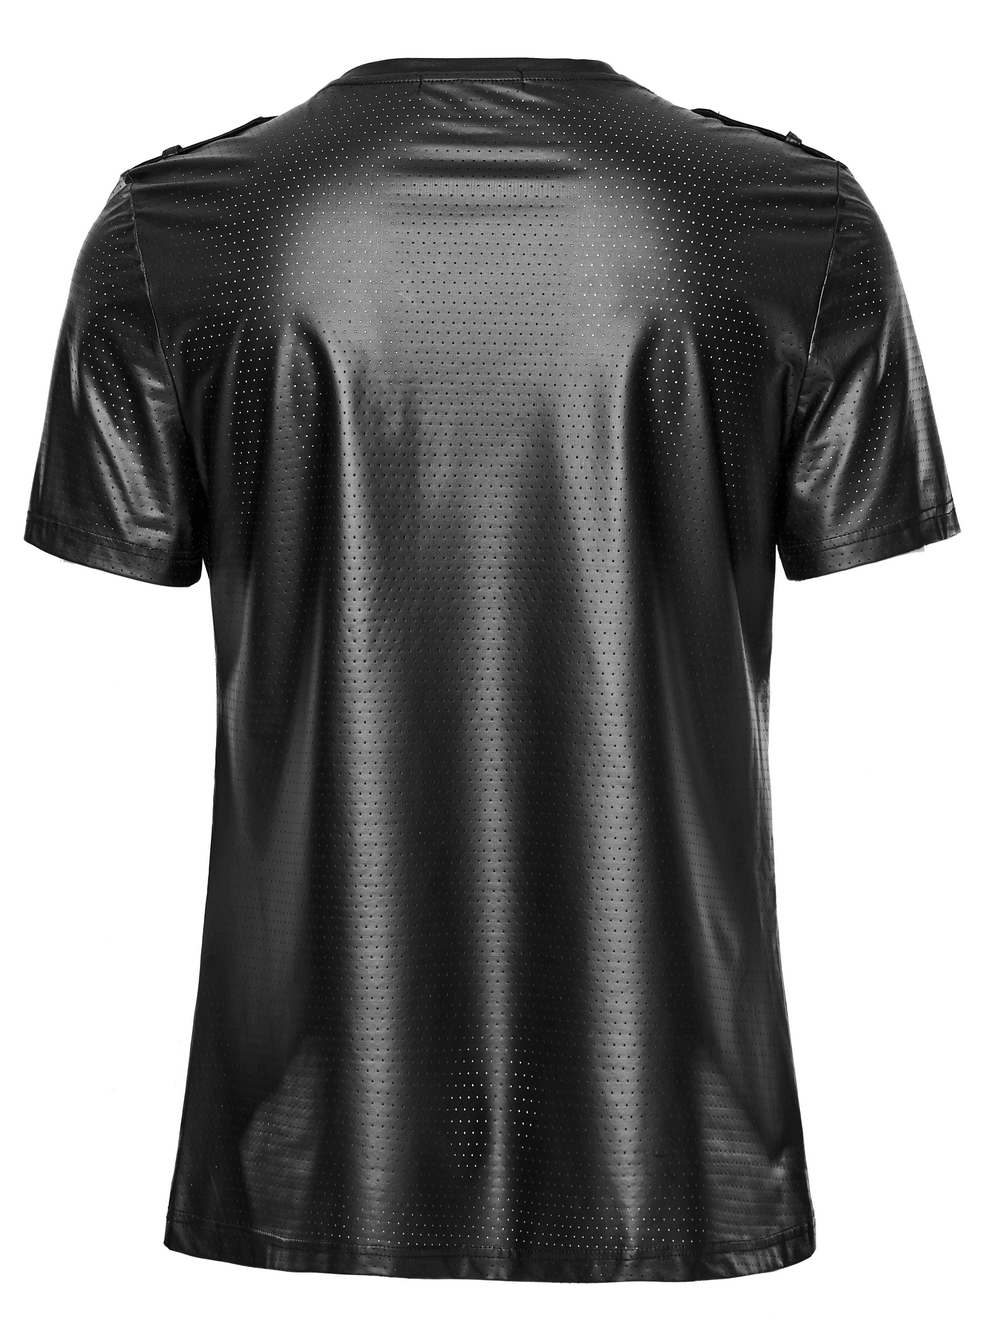 Camiseta Urbana de Hombre de Malla Negra con Bolsillo Frontal Perforado